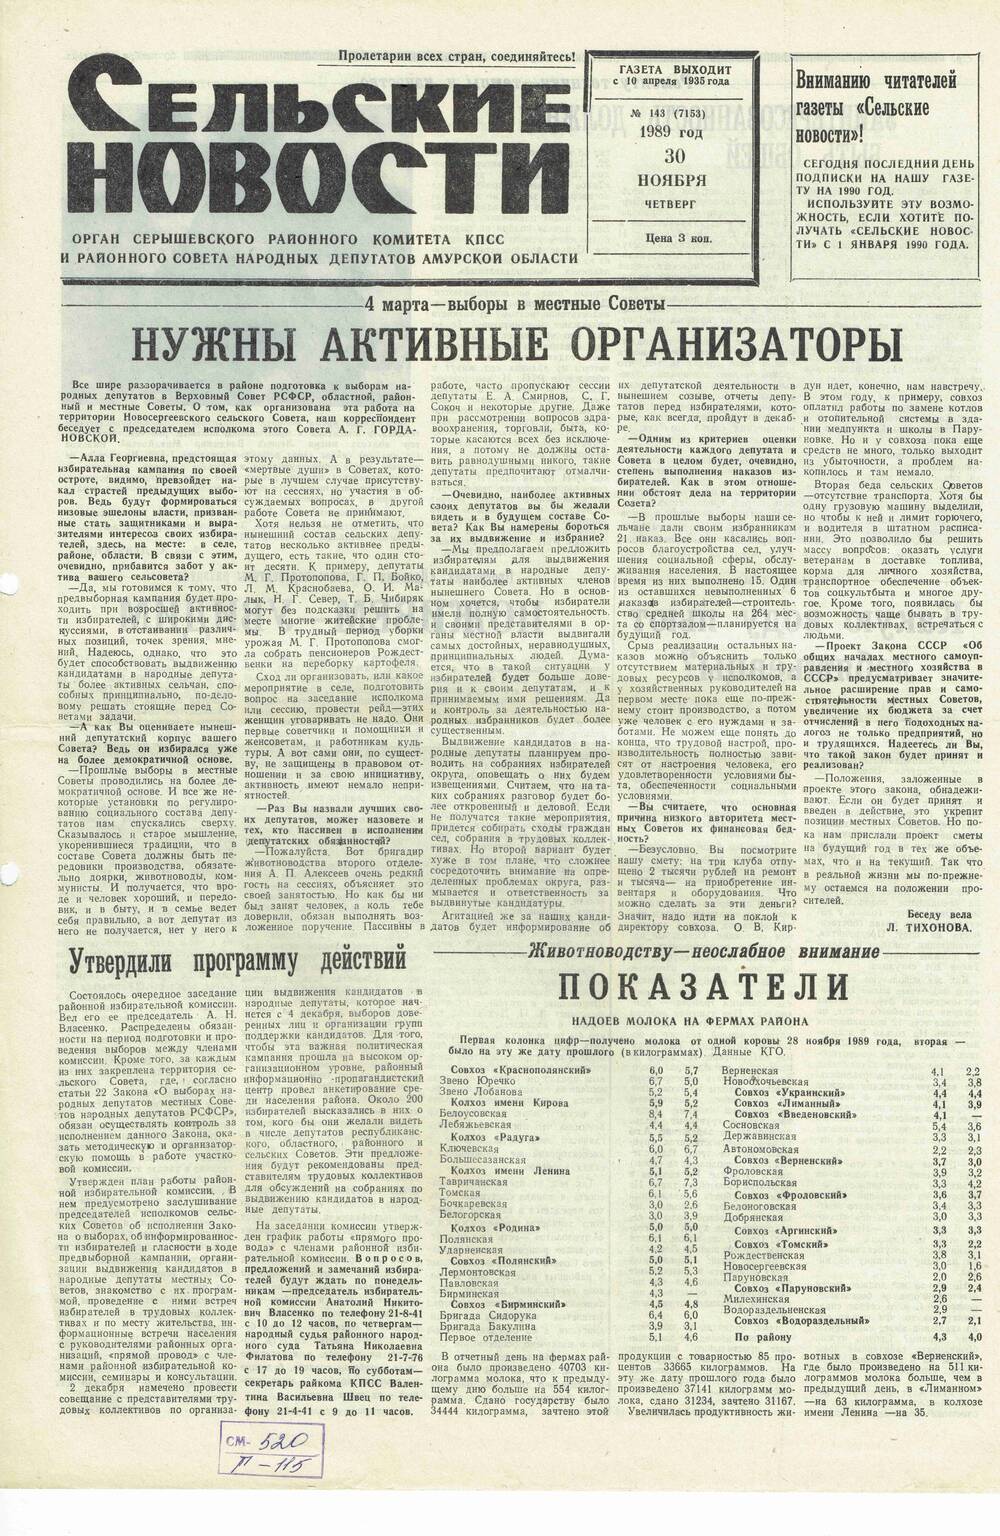 Газета «Сельские новости» №143 30.11.1989 года выпуска.